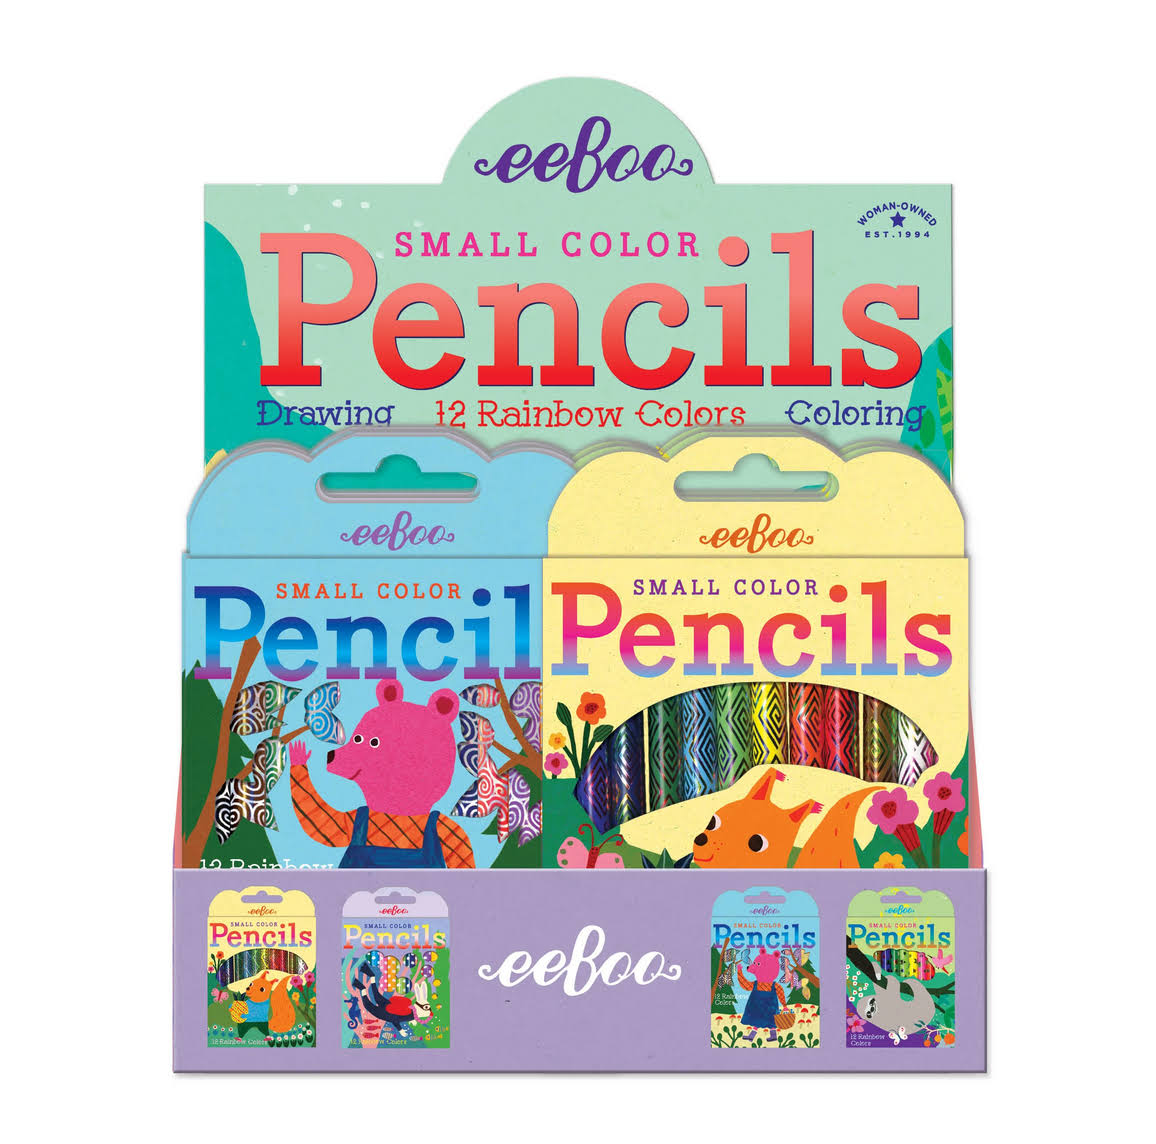 Small Color Pencils / eeBoo Bear